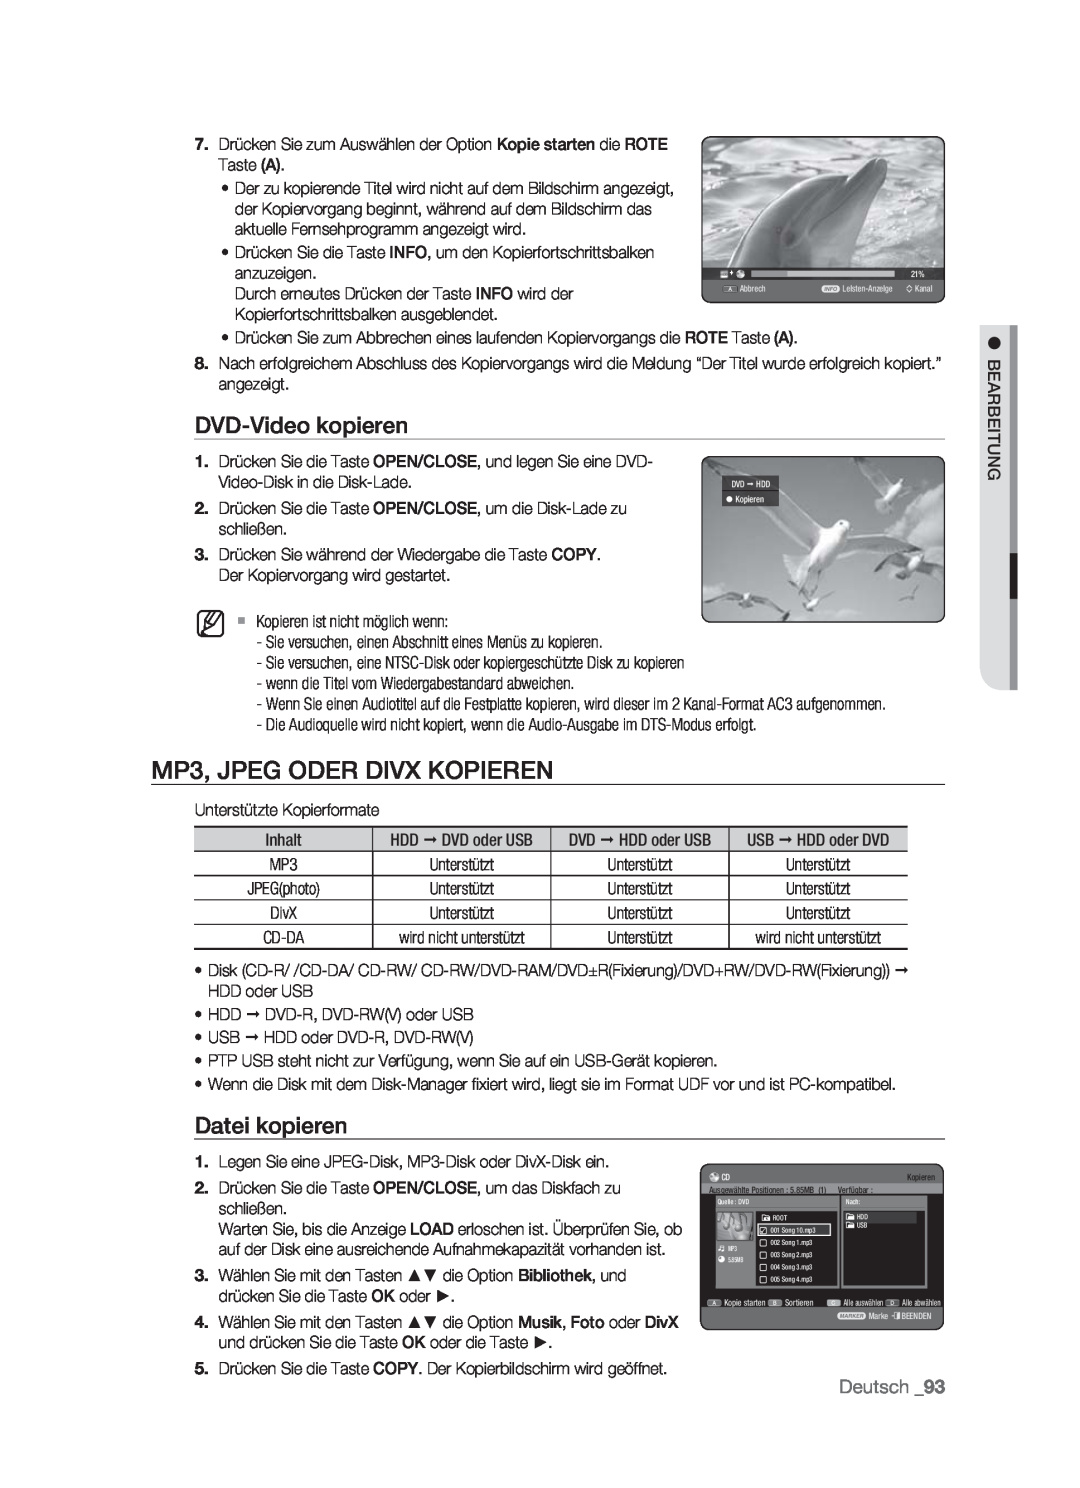 Samsung DVD-HR773/XEB, DVD-HR773/XEN manual MP3, JPEG ODER DIVX KOPIEREN, DVD-Video kopieren, Datei kopieren, Deutsch 